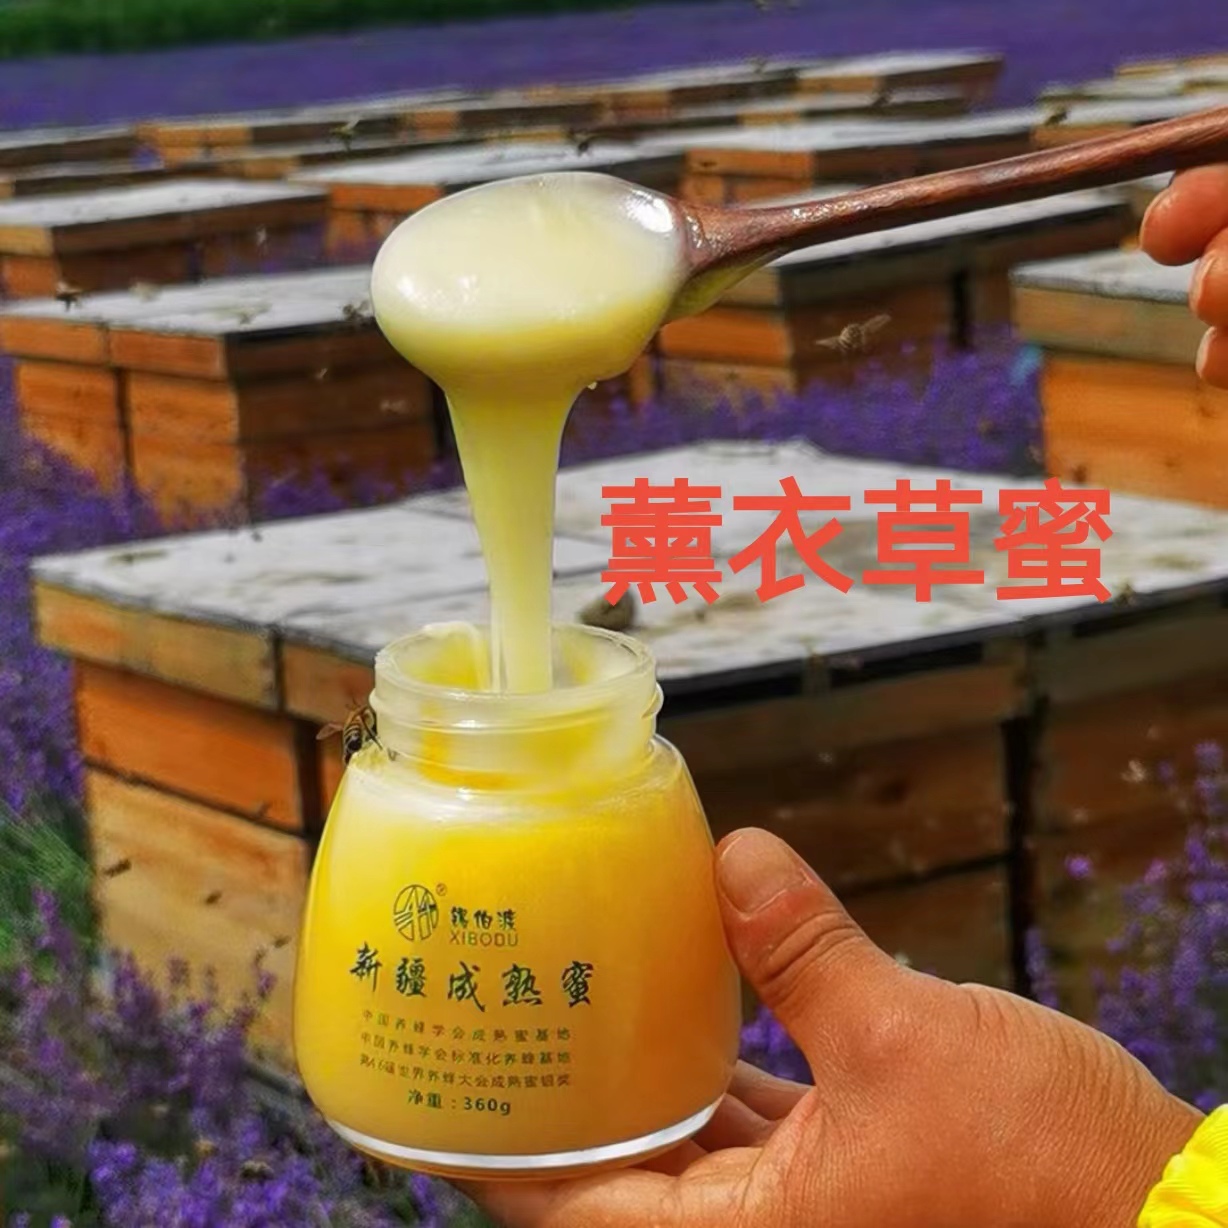 锡伯渡蜂蜜 新疆阿勒泰自然成熟蜜 43度纯正蜂蜜 360g/瓶